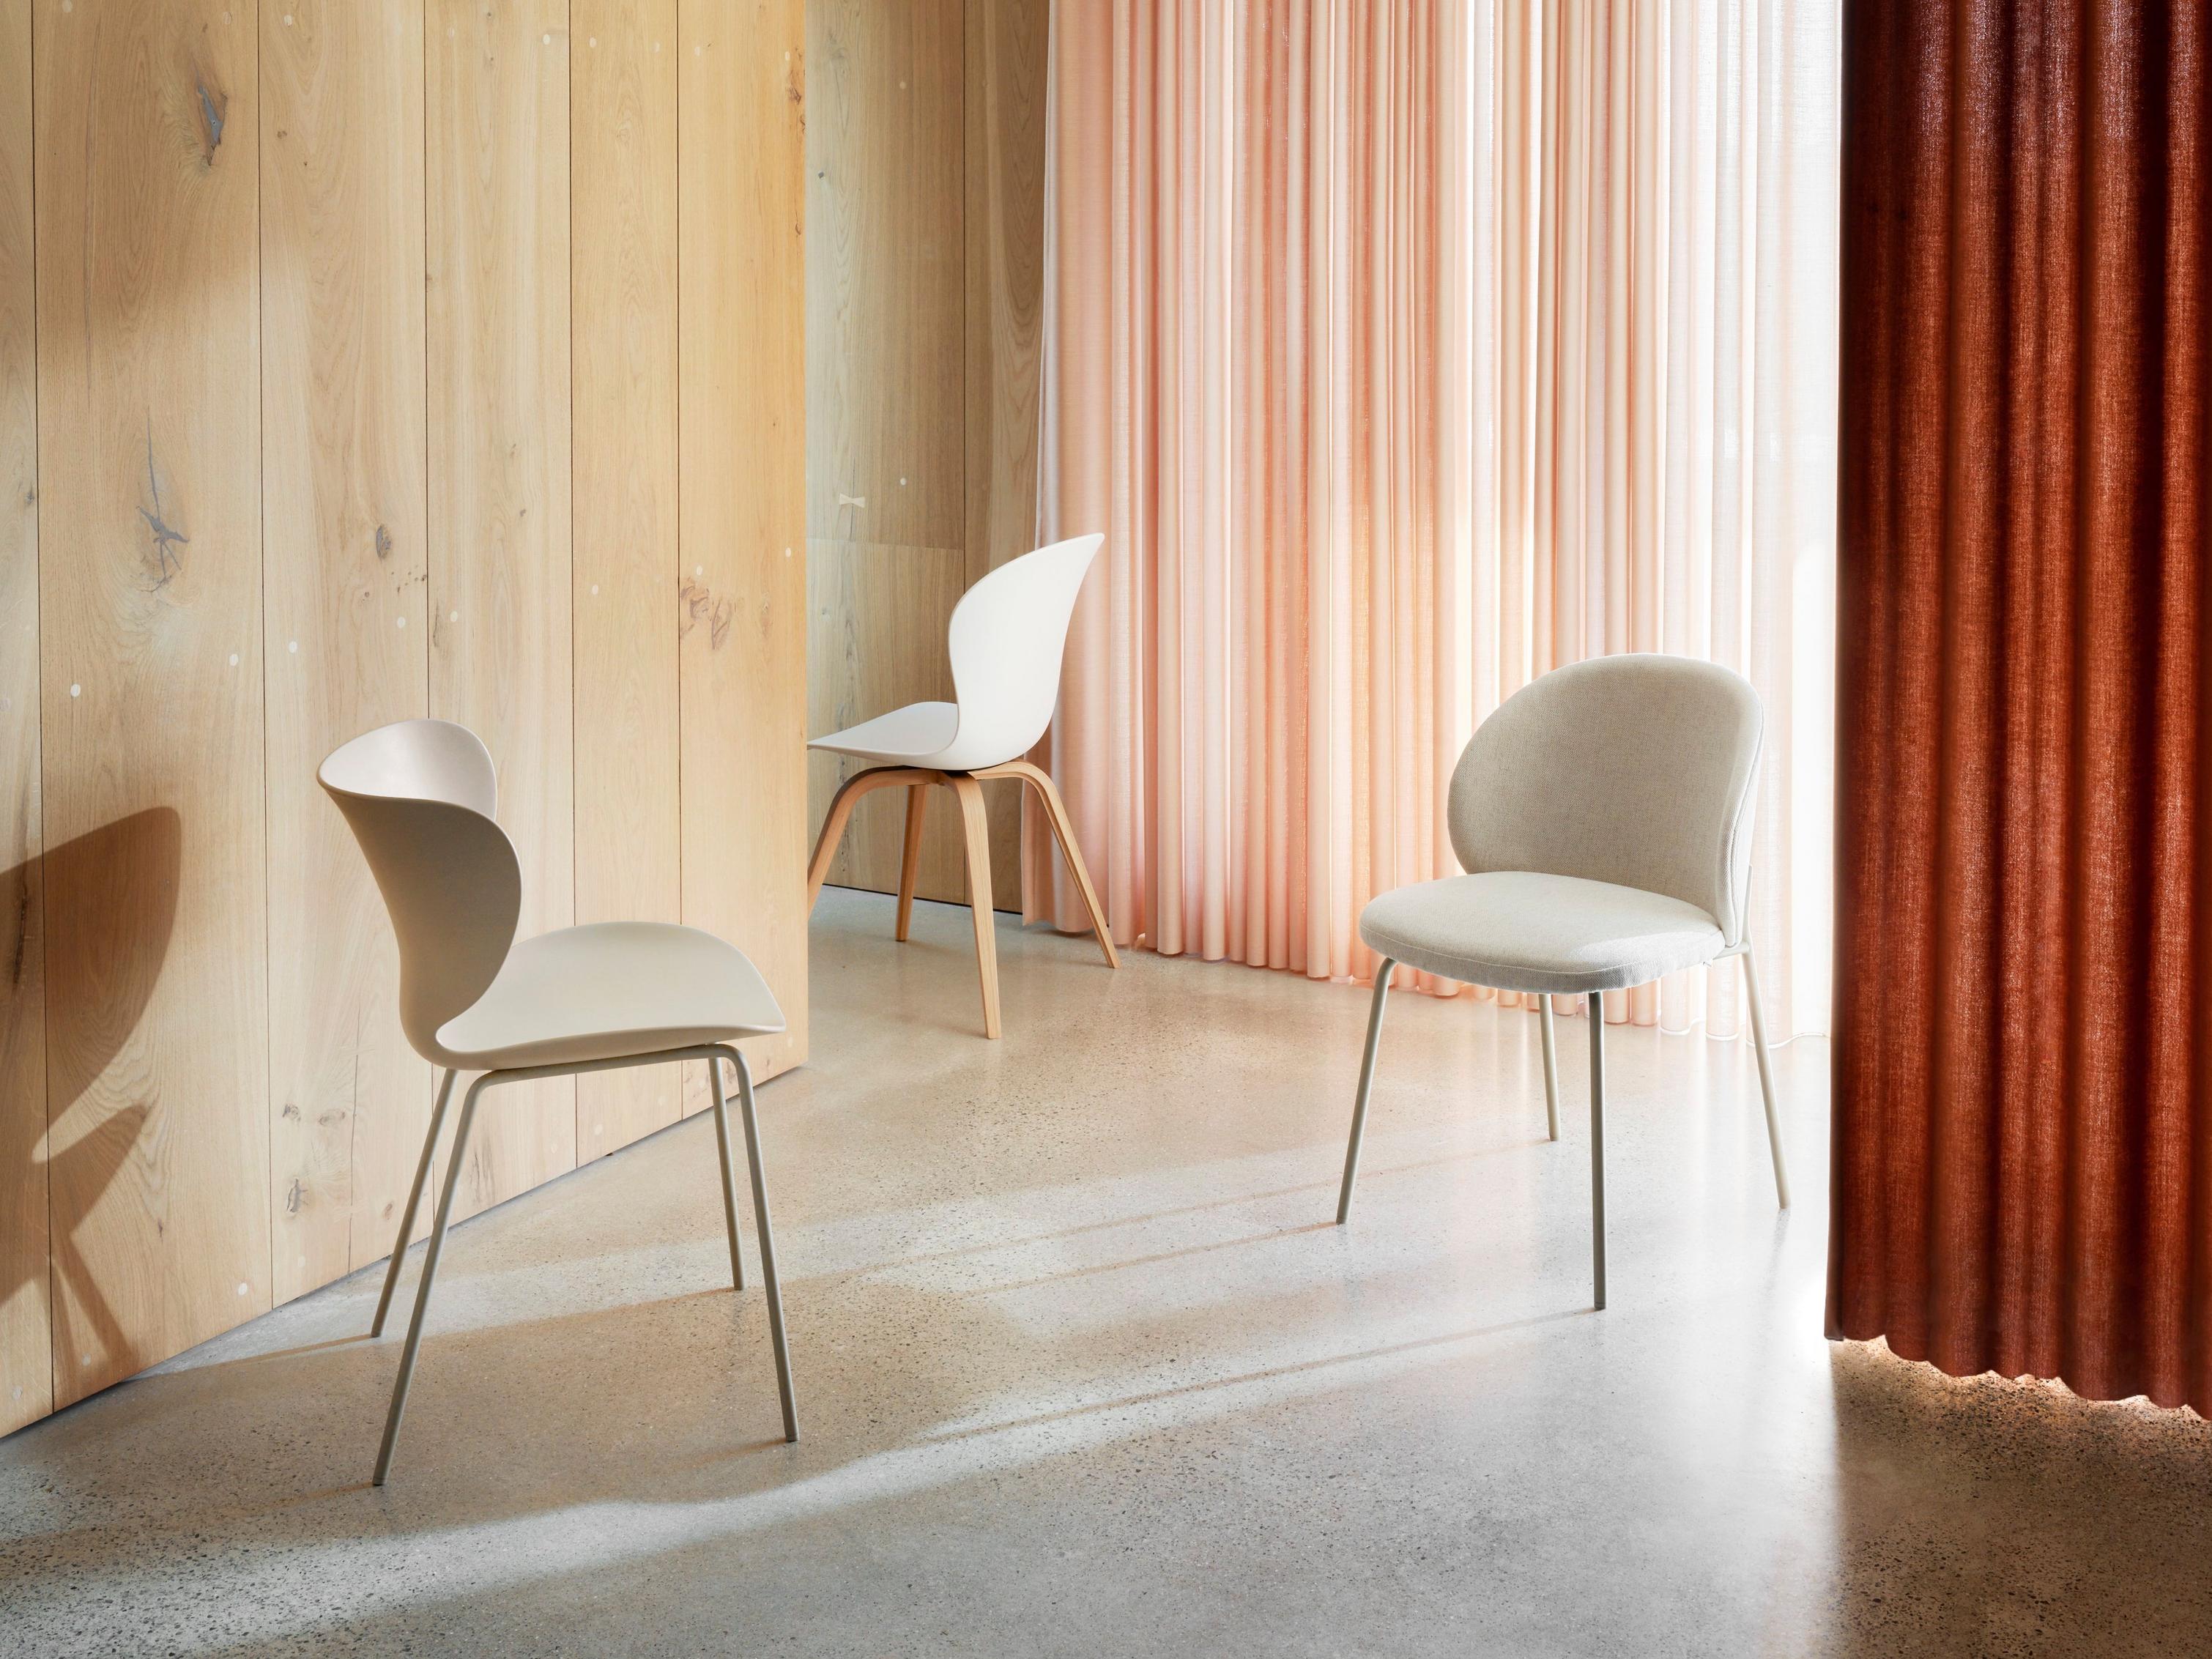 Cadeiras modernas numa divisão com parede de madeira e cortina drapeada em vermelho coral.